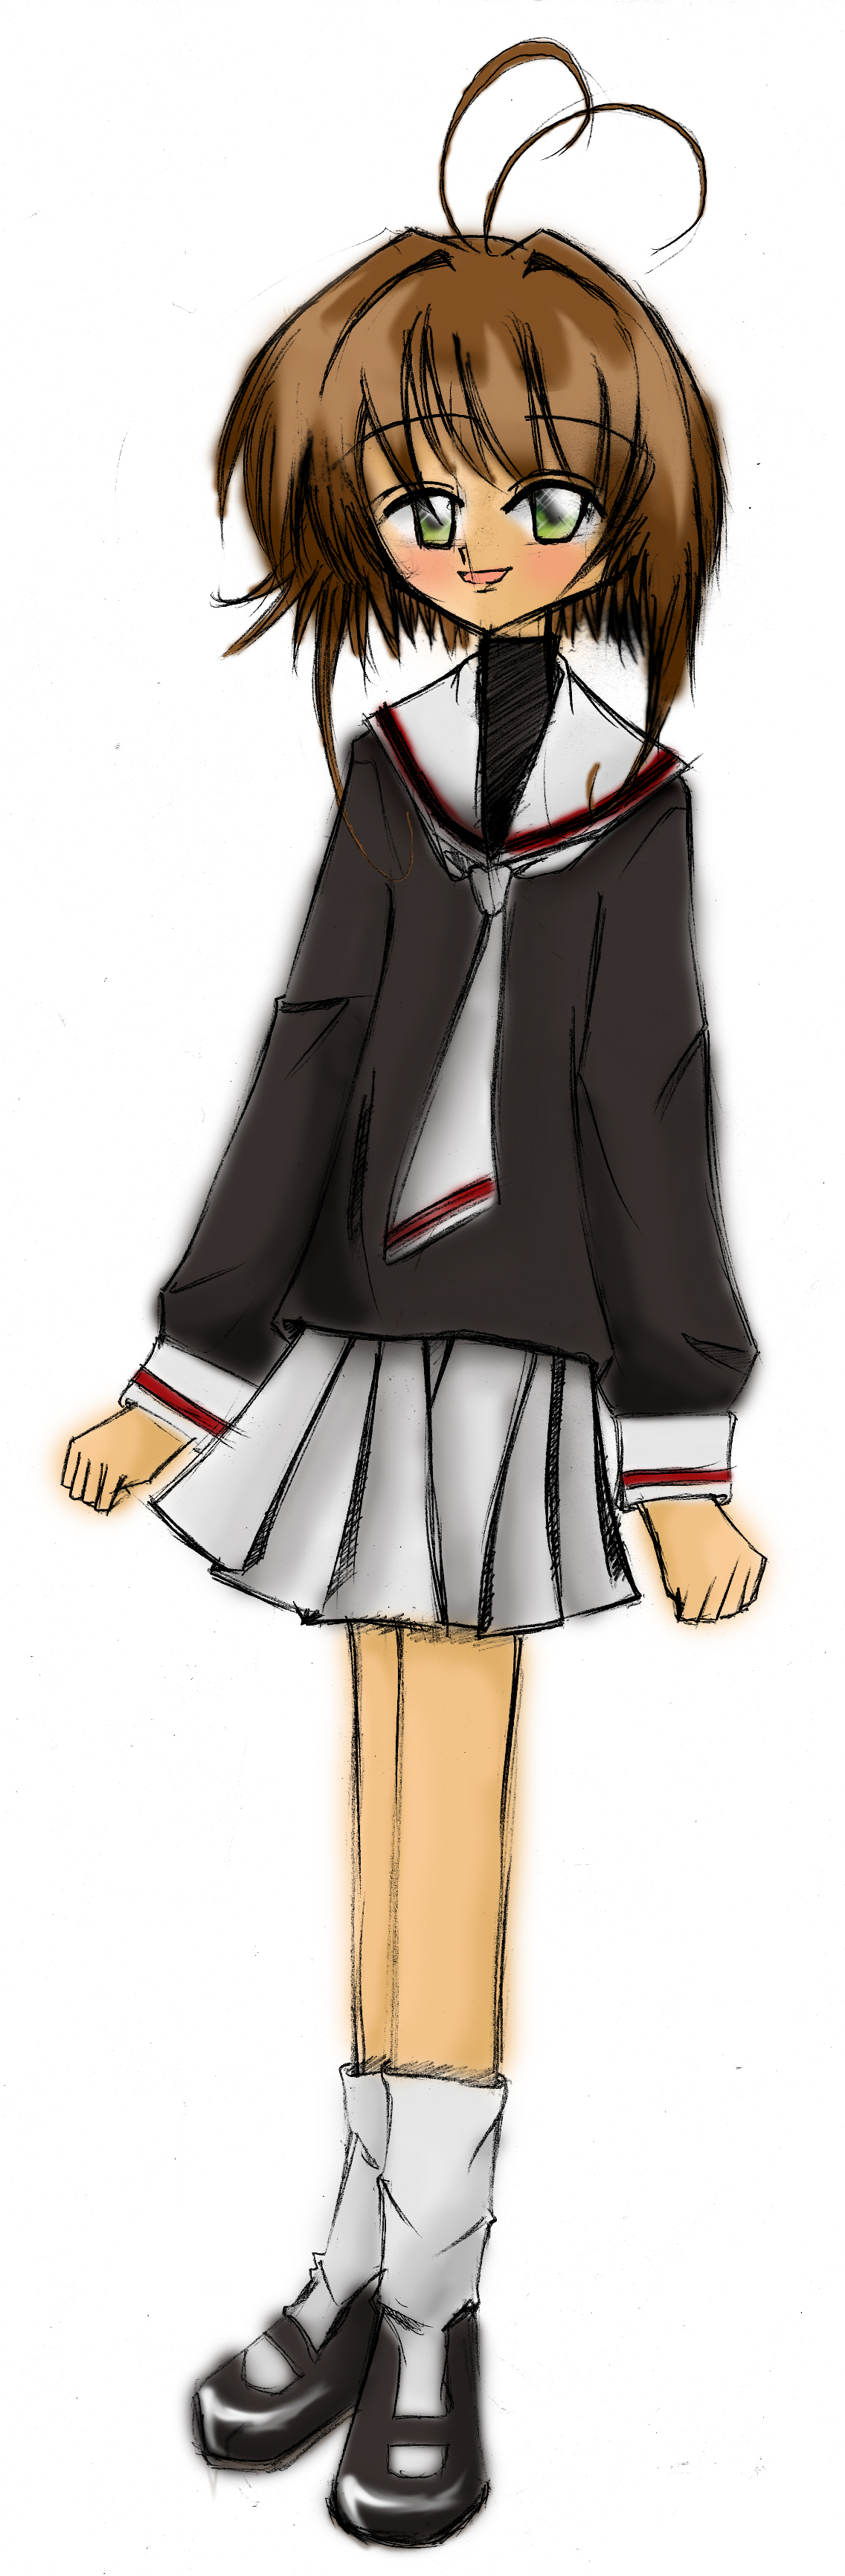 Sakura-chan in School Uniform by ScribbleArt